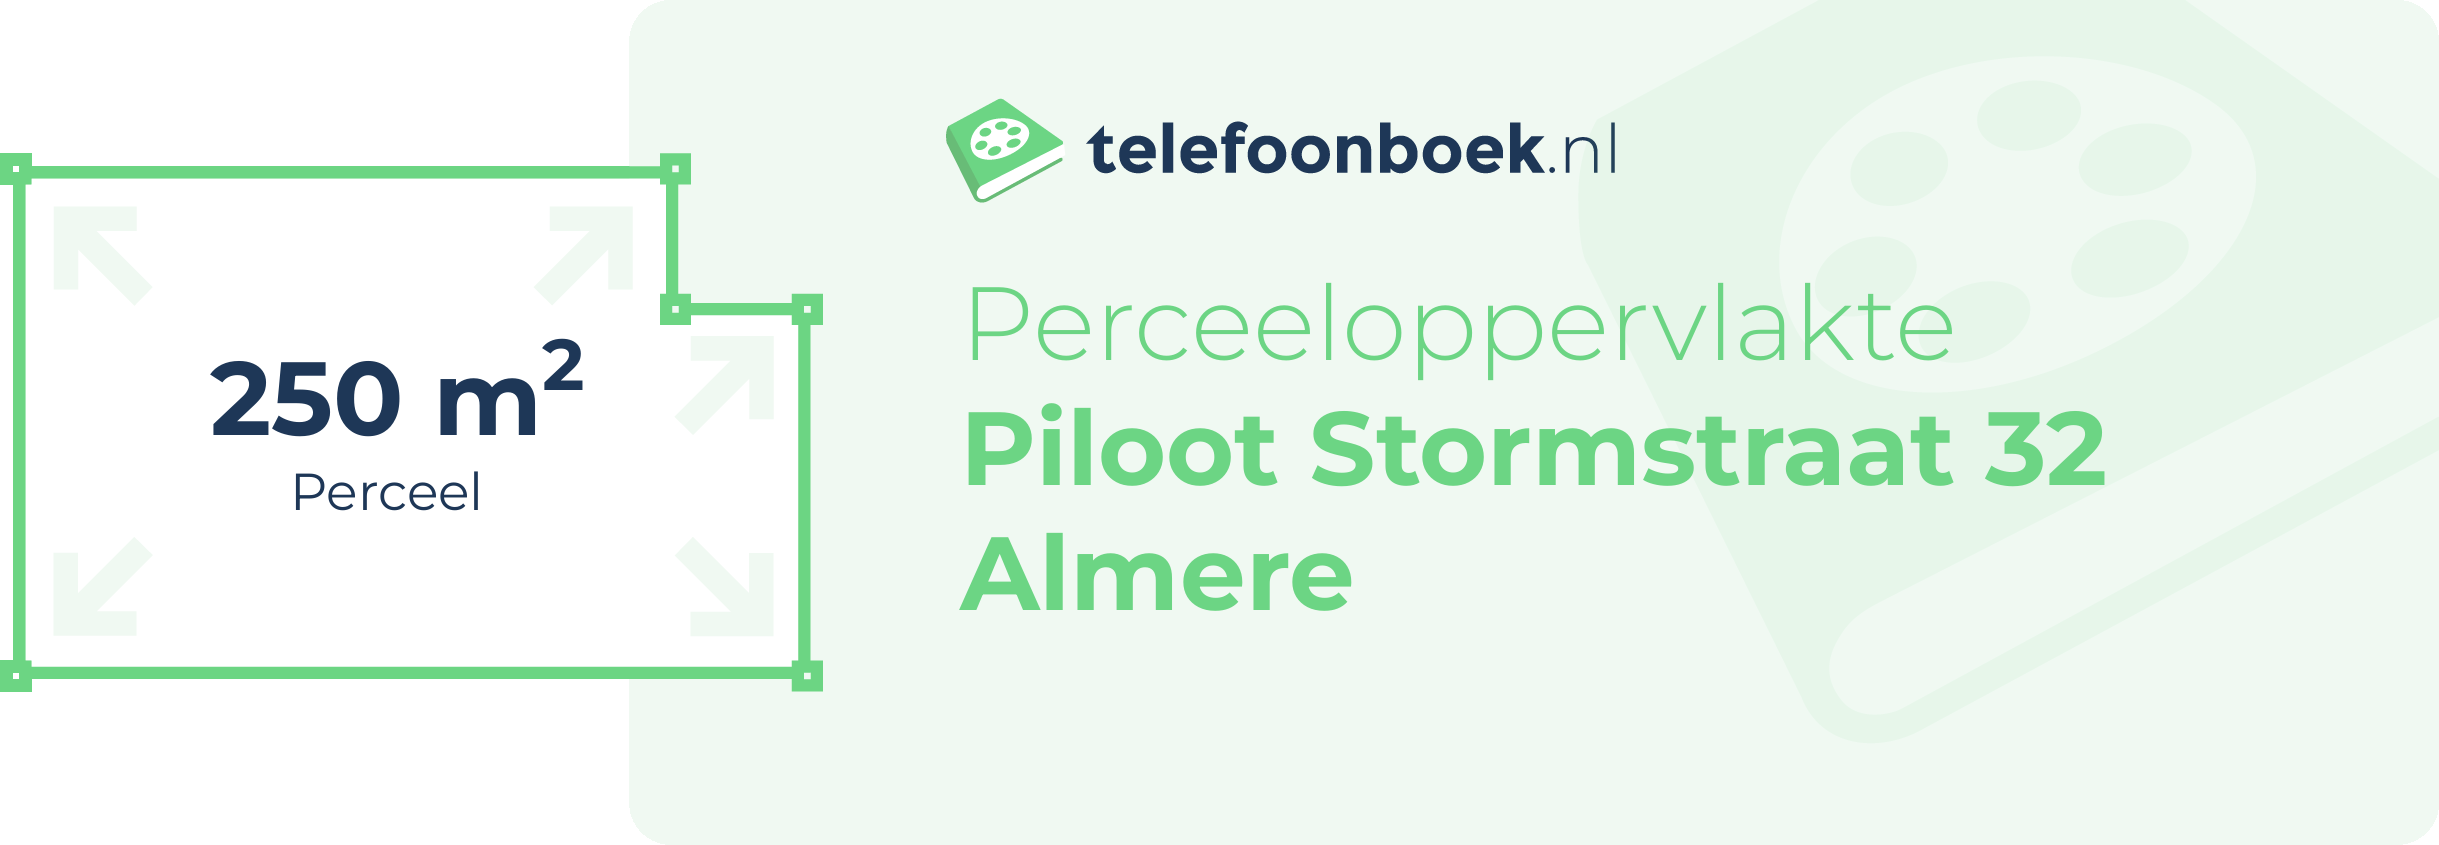 Perceeloppervlakte Piloot Stormstraat 32 Almere